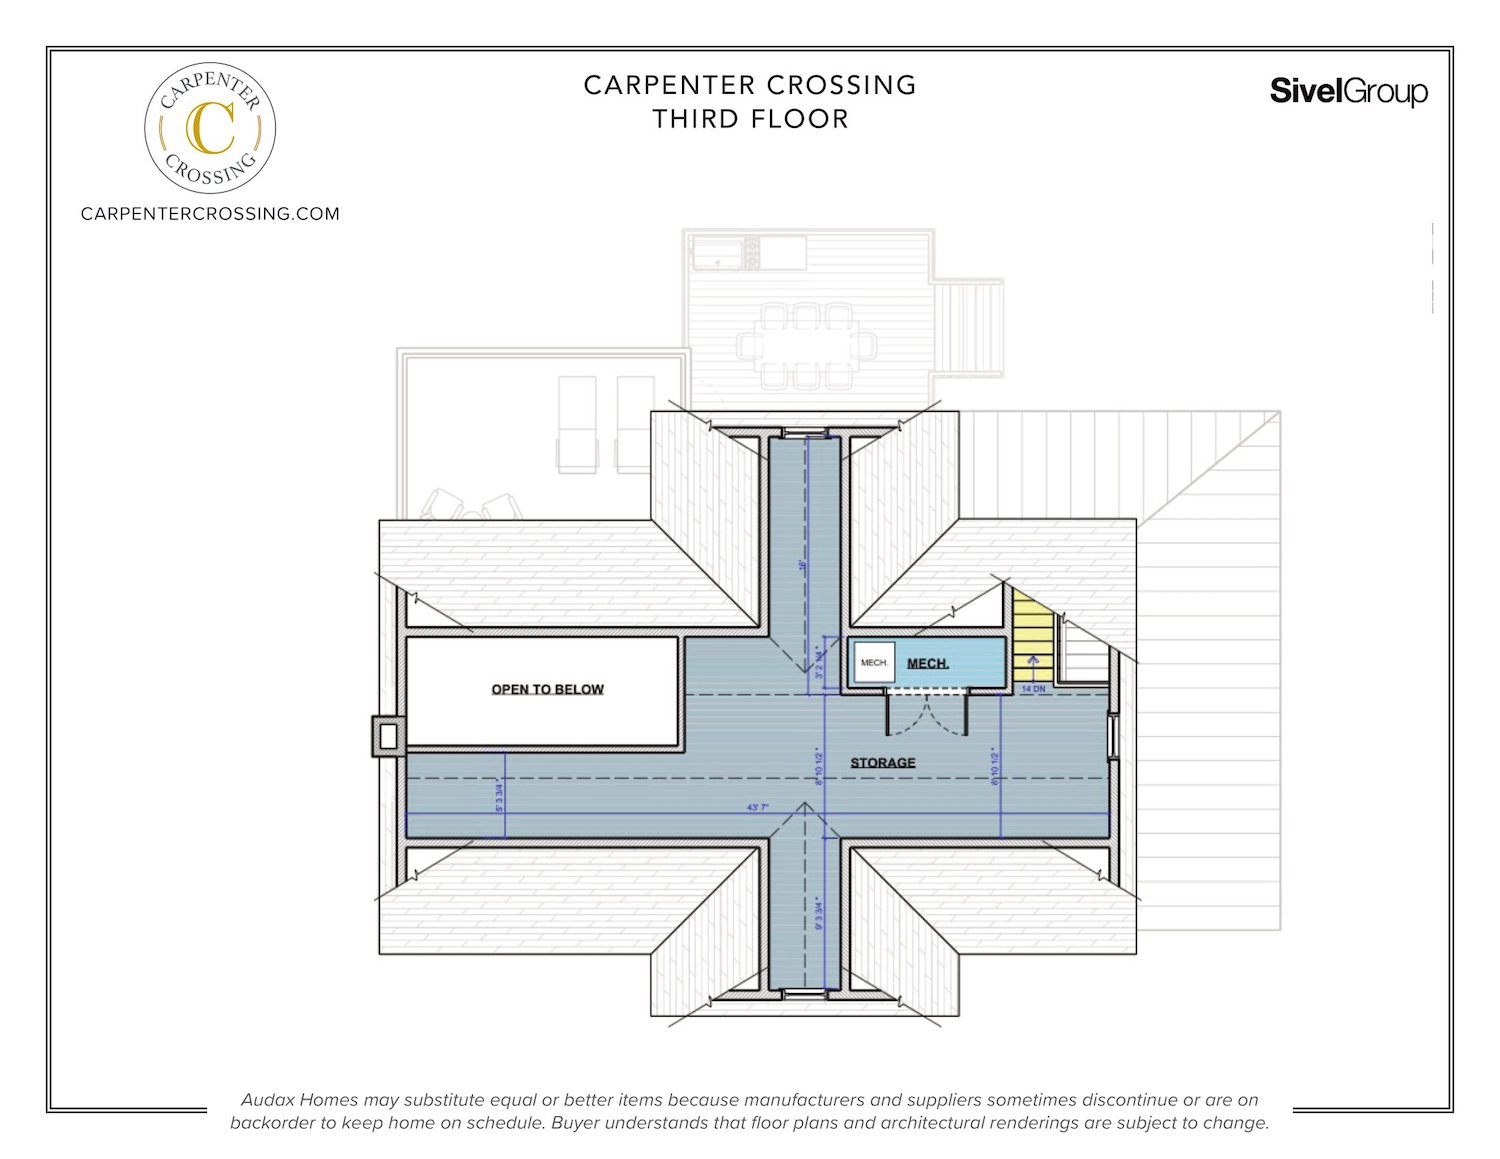  Carpenter Crossing Floorplans